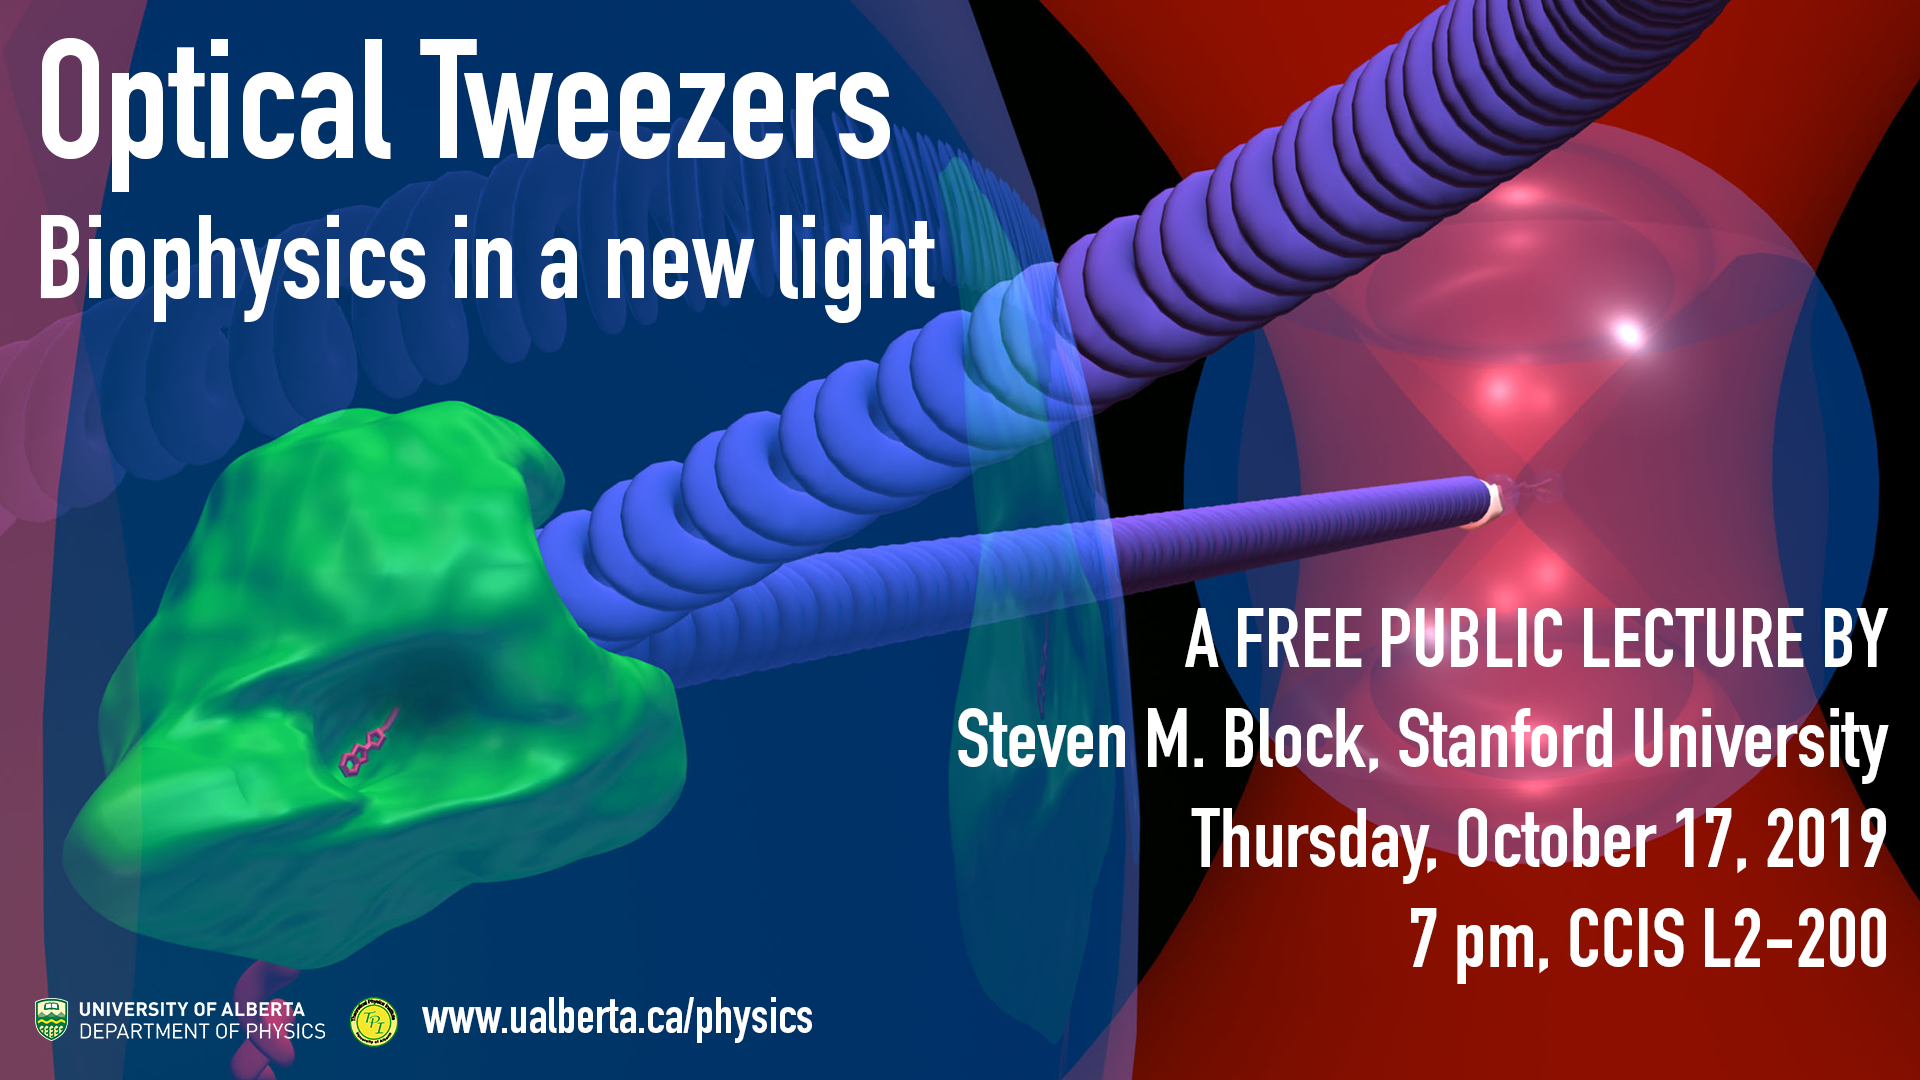 Steven M. Bloc public lecture, Thursday, October 17 at 7 pm, CCIS L2-200